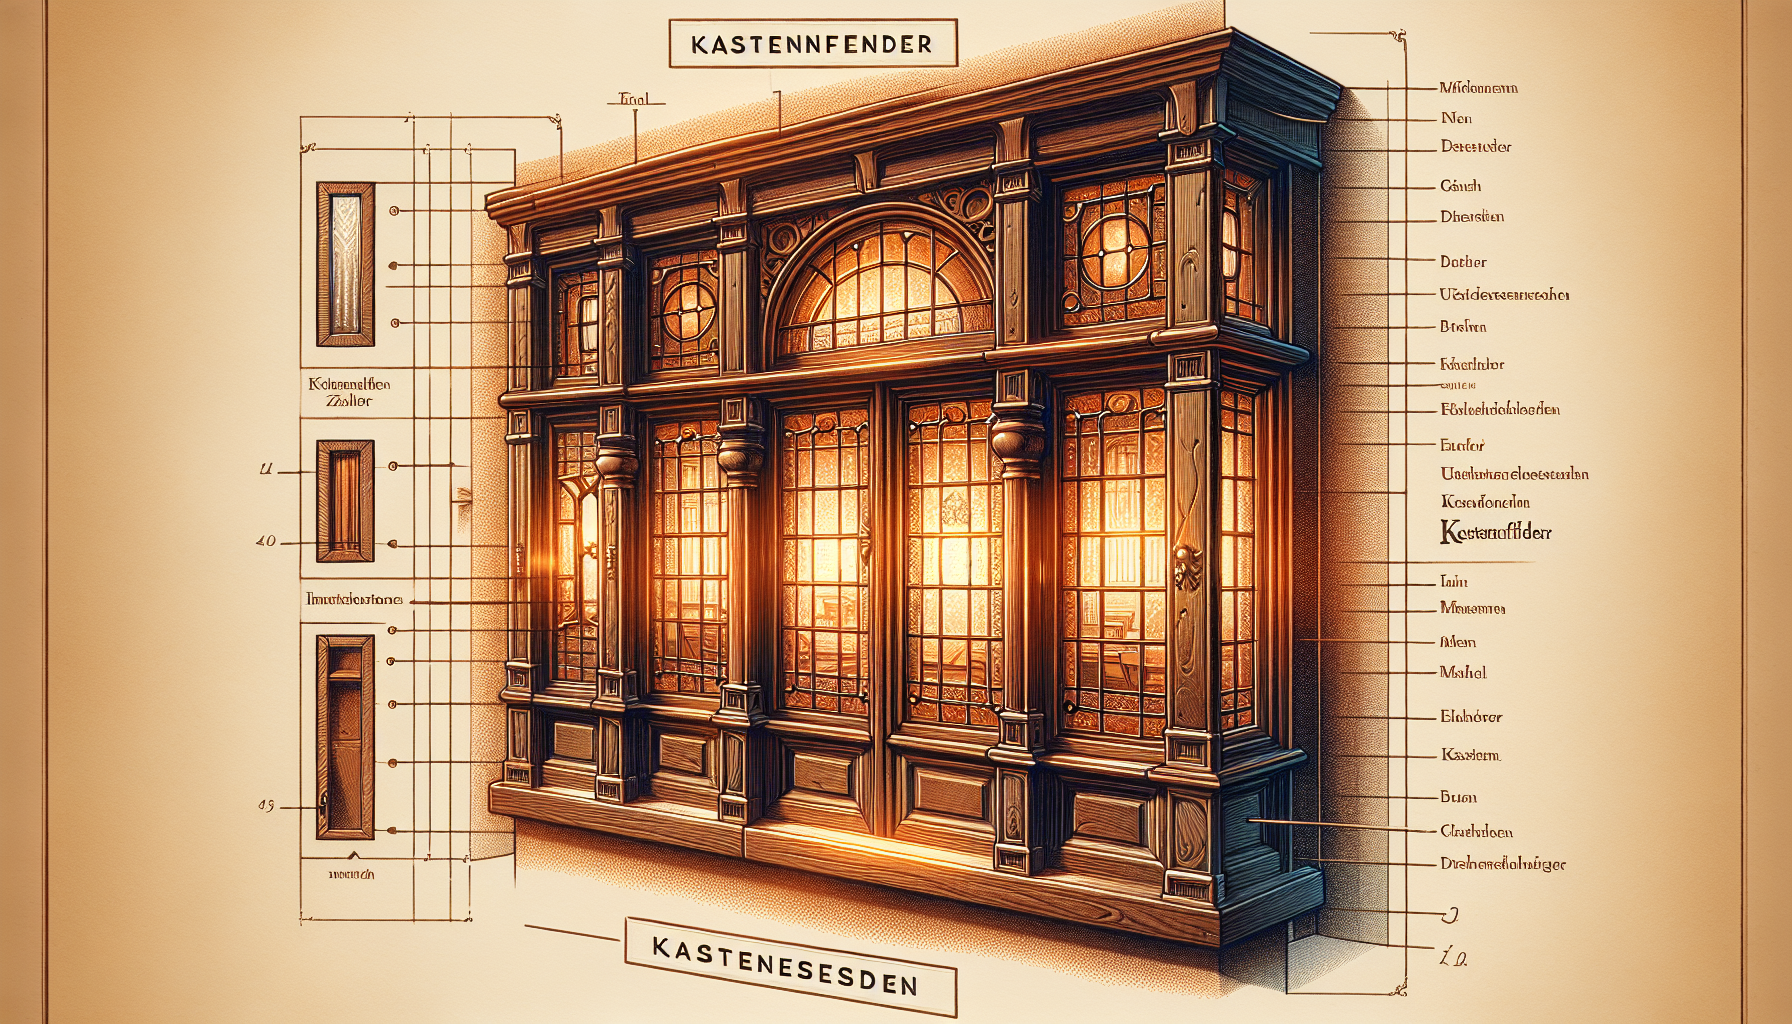 Illustration von historischen Kastenfenstern